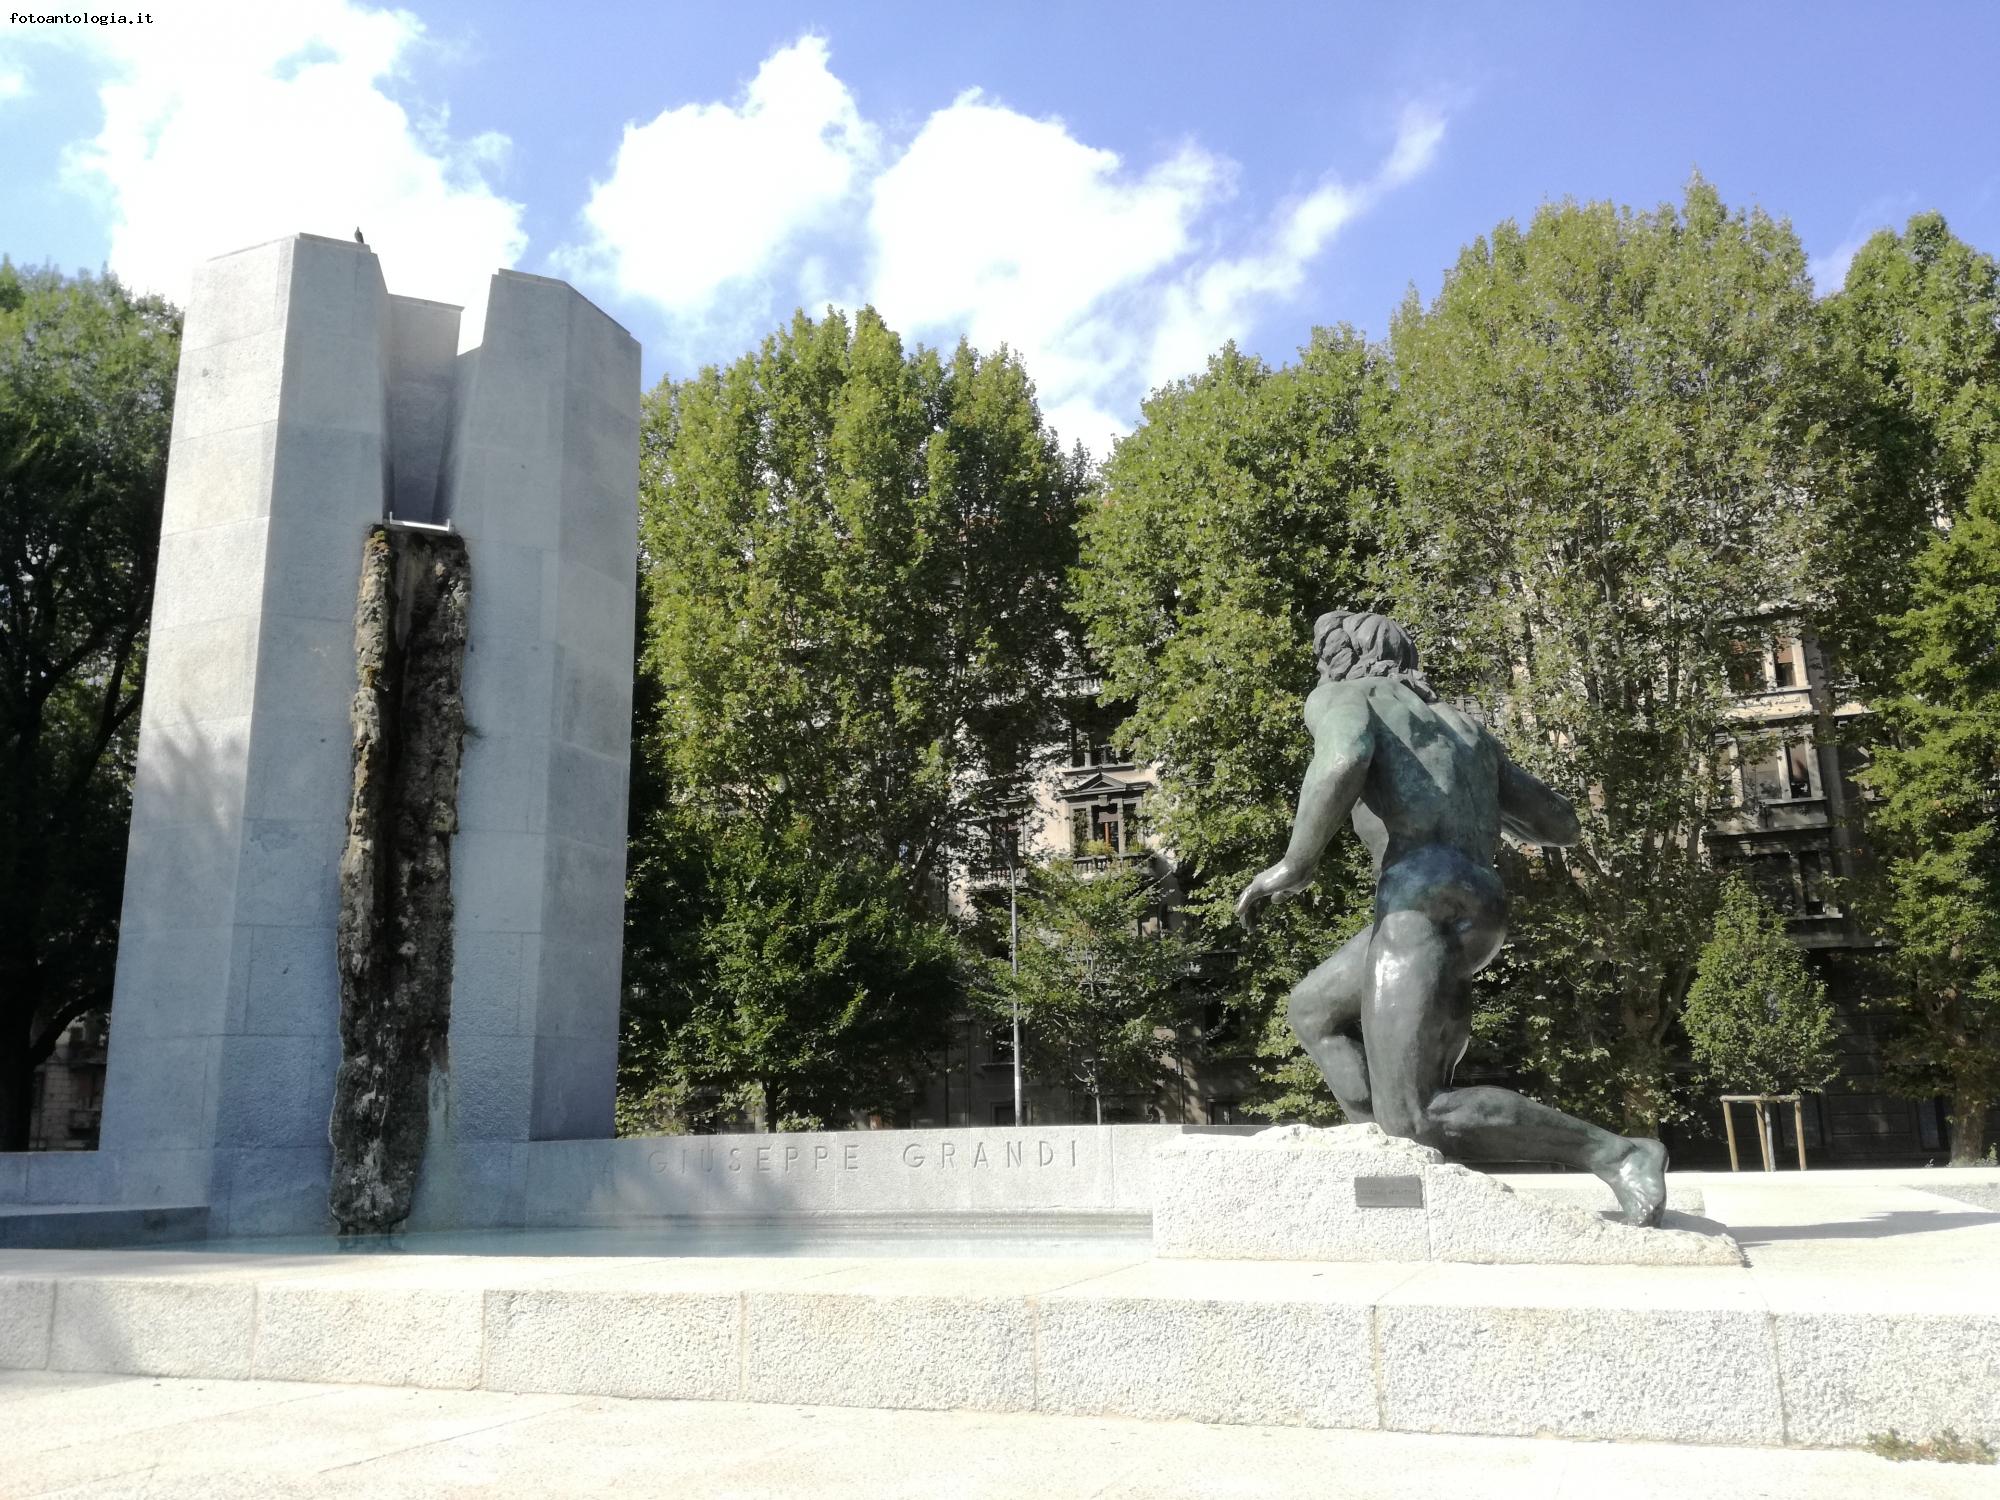 Milano - Monumento a Giuseppe Grandi